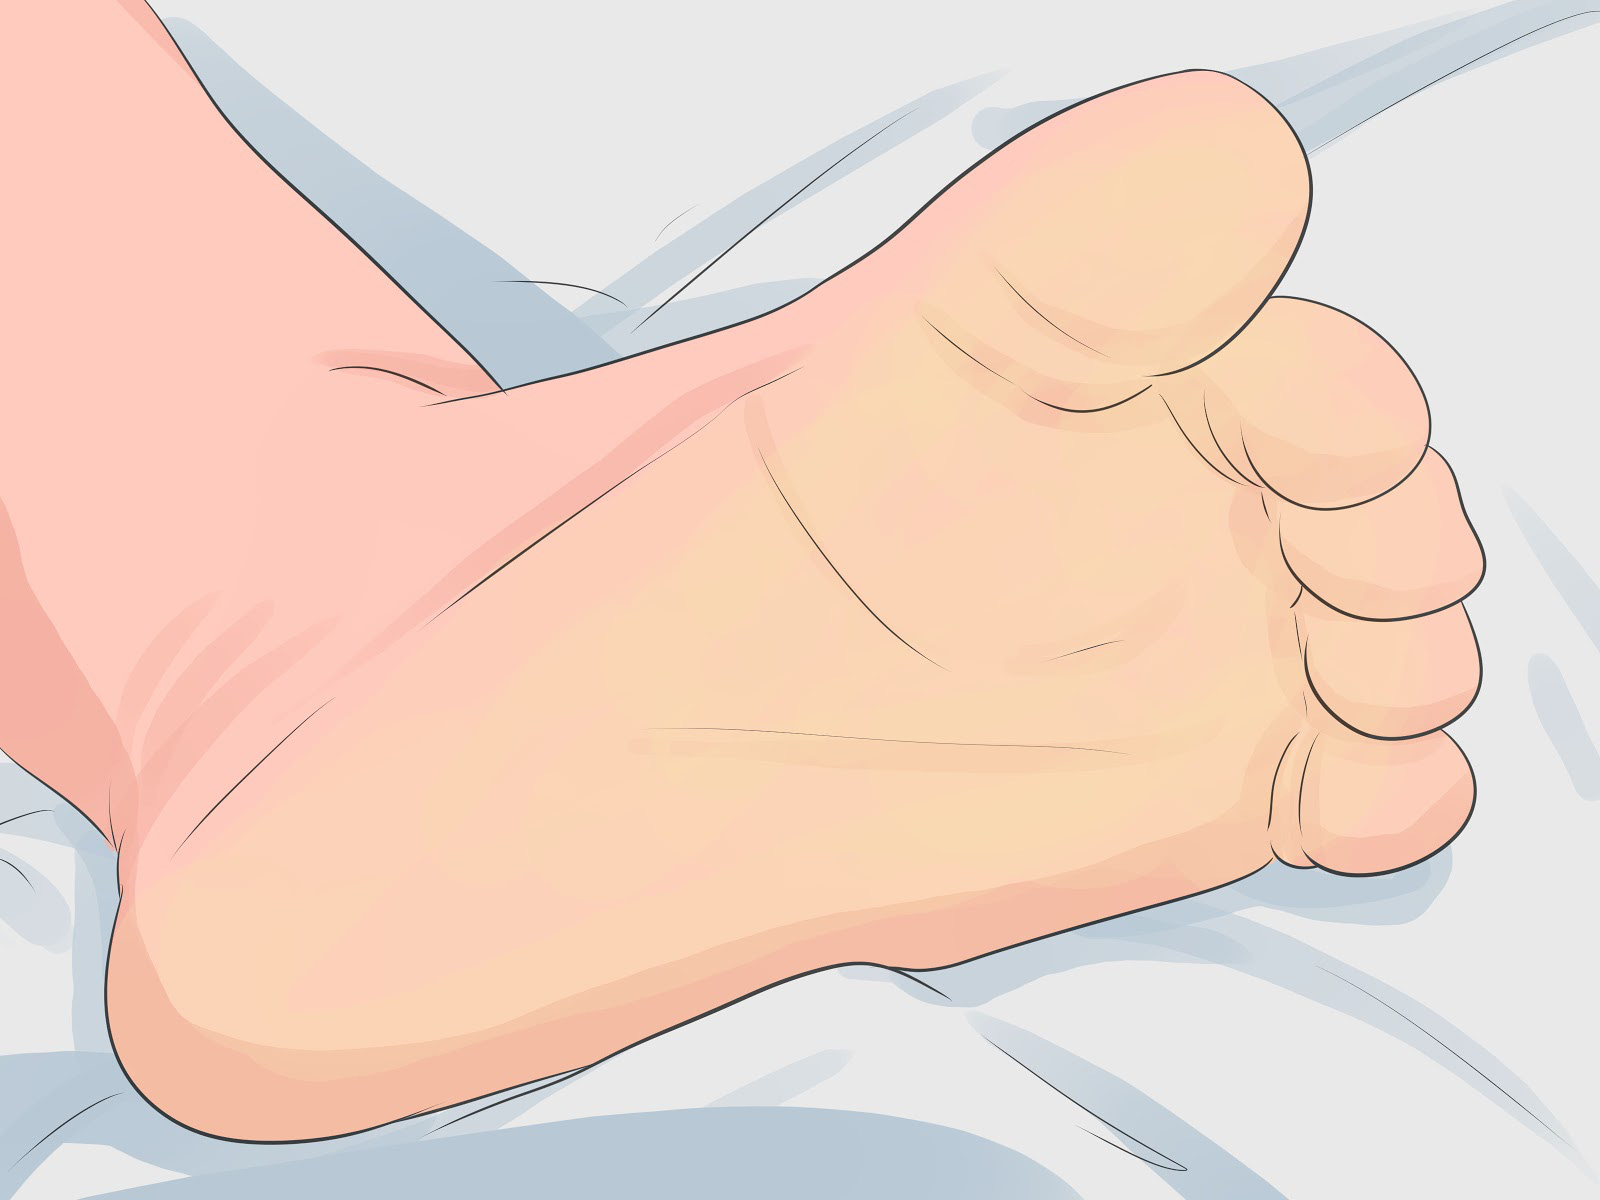 4 thay đổi ở bàn chân cho thấy gan của bạn đang dần tồi tệ - Ảnh 3.